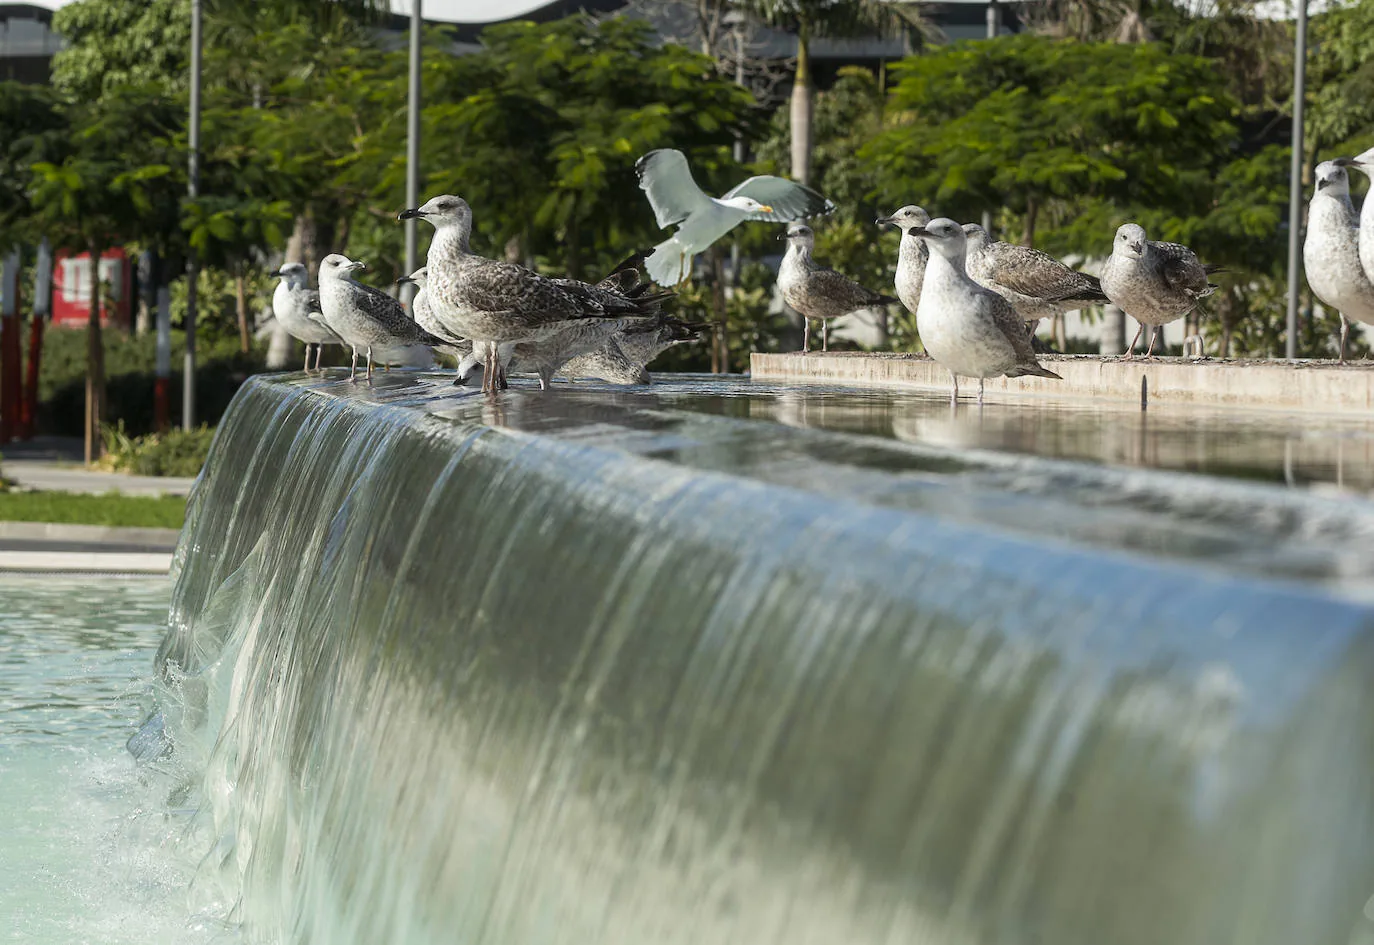 El hecho de haber creado una lámina de agua dulce de grandes dimensiones la ha convertido en el punto de reunión de miles de estas aves acuáticas, que aprovechan su cercanía al Puerto para beber y bañarse.